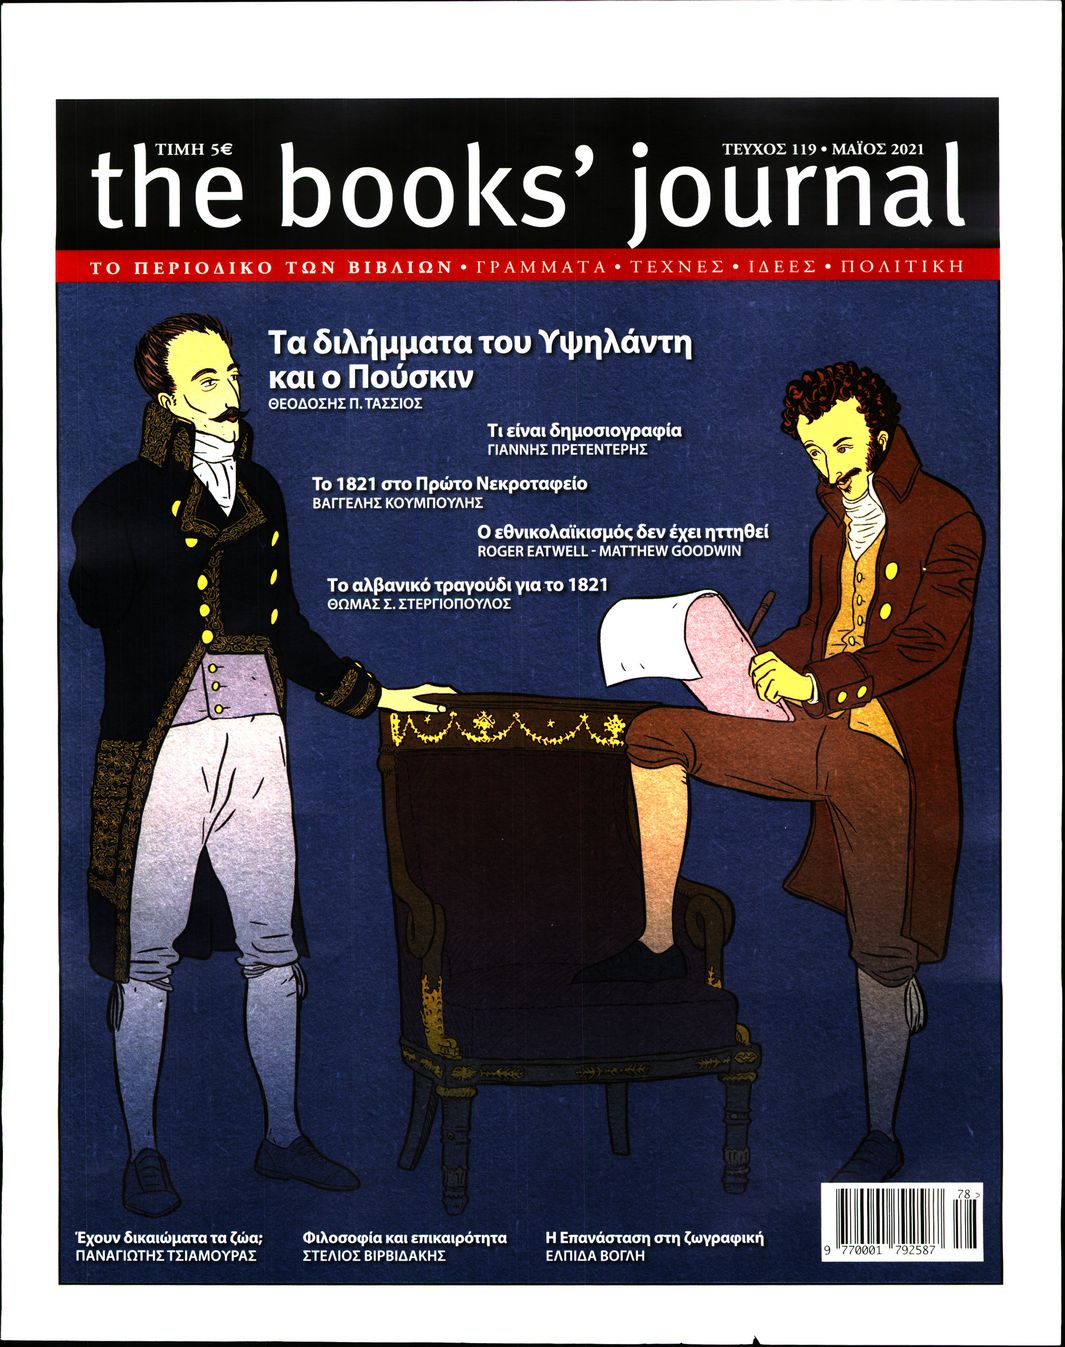 Πρωτοσέλιδο του εντύπου «THE BOOKS JOURNAL» που δημοσιεύτηκε στις 01/05/2021